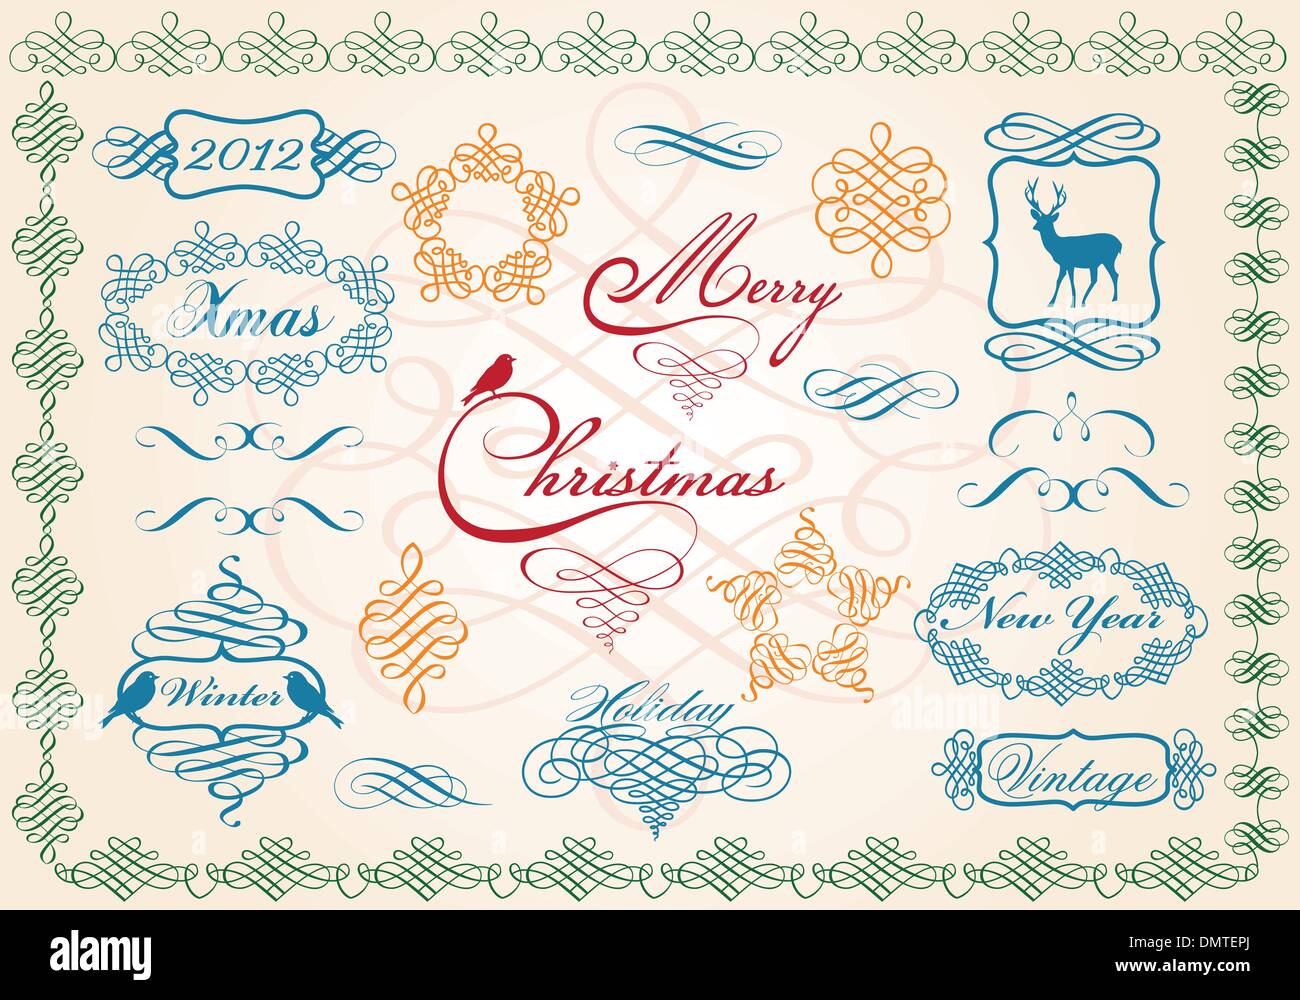 Images de Noël et des frontières, vector Illustration de Vecteur